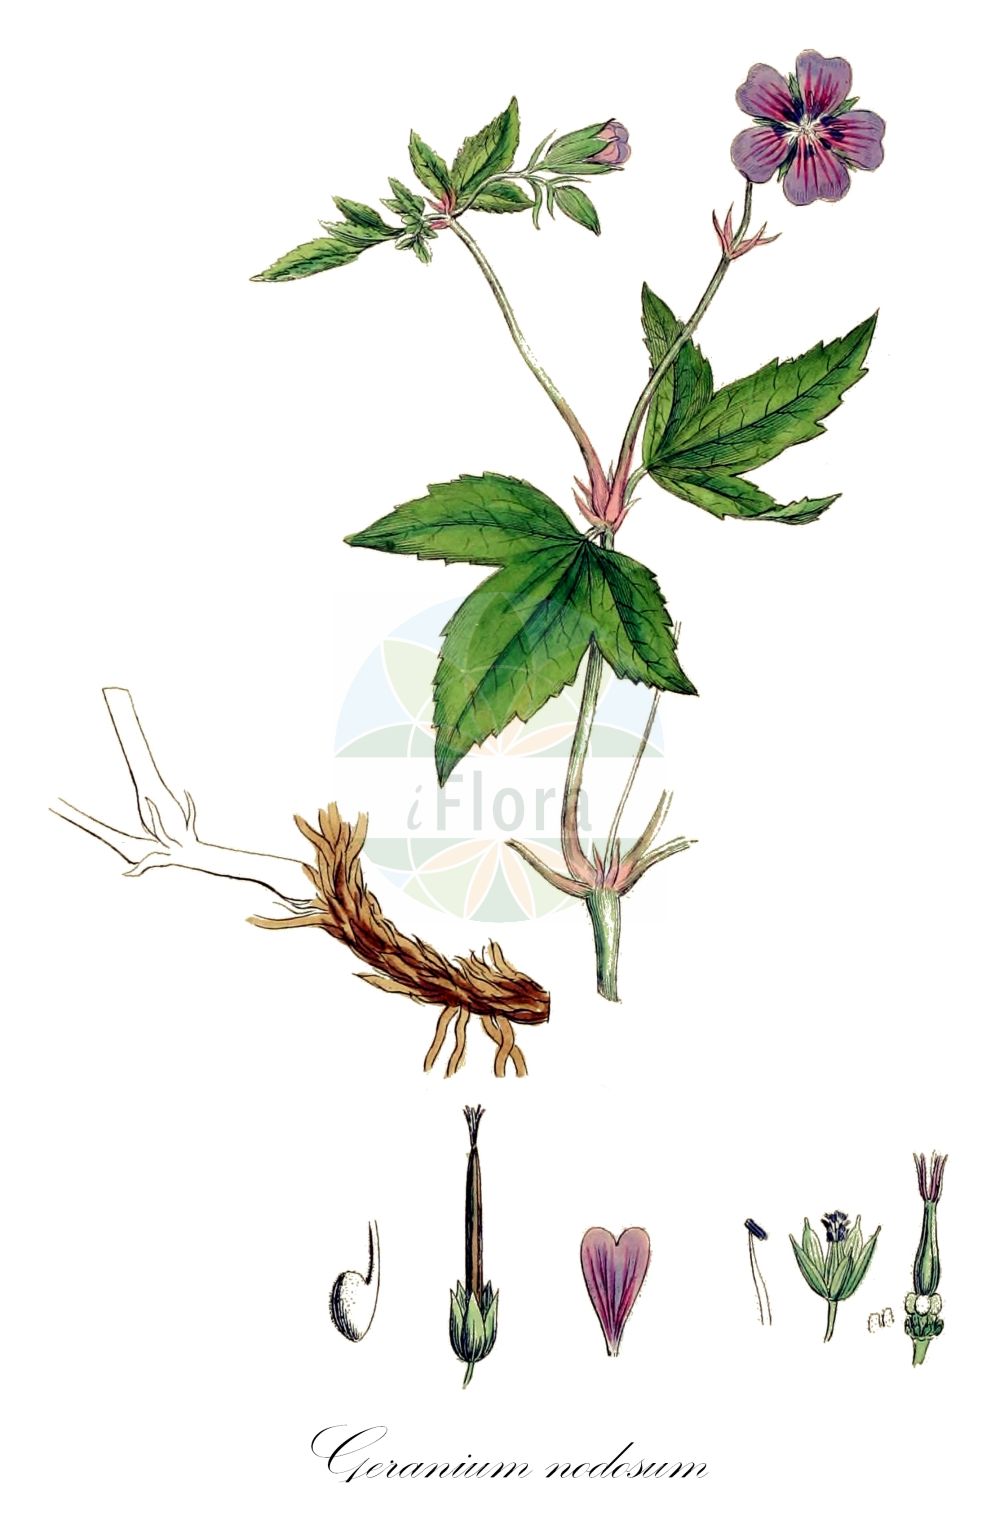 Historische Abbildung von Geranium nodosum (Knotted Crane's-bill). Das Bild zeigt Blatt, Bluete, Frucht und Same. ---- Historical Drawing of Geranium nodosum (Knotted Crane's-bill). The image is showing leaf, flower, fruit and seed.(Geranium nodosum,Knotted Crane's-bill,Geranium eugeniae,Geranium freyeri,Geranium nodosum,Geranium nodosum subsp. eugeniae,Geranium,Storchschnabel,Crane's-bill,Geraniaceae,Storchschnabelgewächse,Geranium family,Blatt,Bluete,Frucht,Same,leaf,flower,fruit,seed,Sowerby (1790-1813))